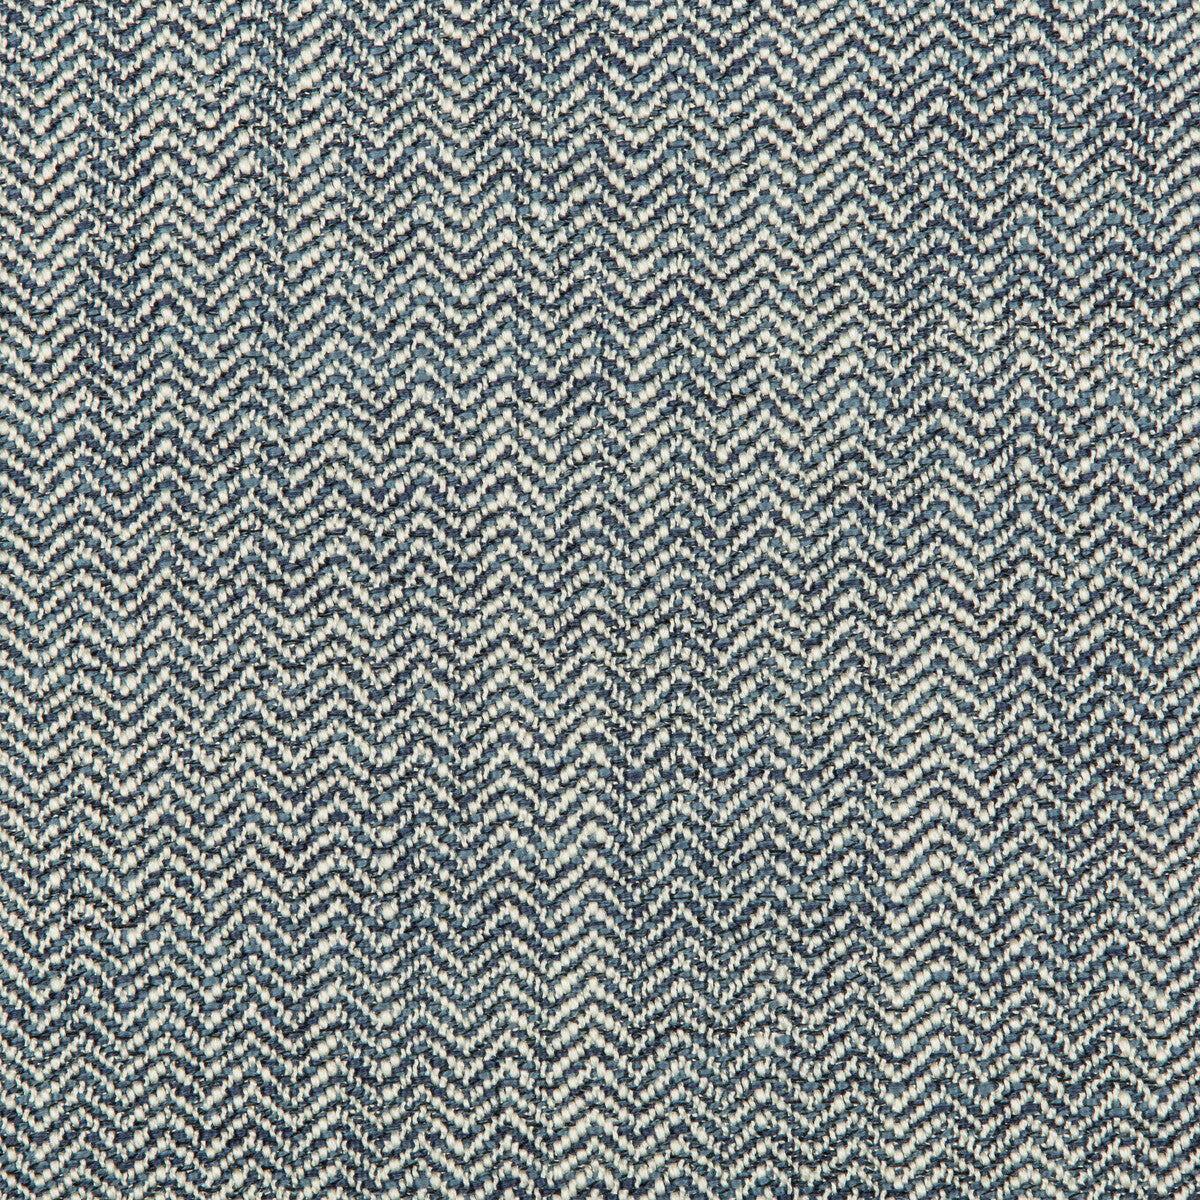 Kravet Design fabric in 35682-5 color - pattern 35682.5.0 - by Kravet Design